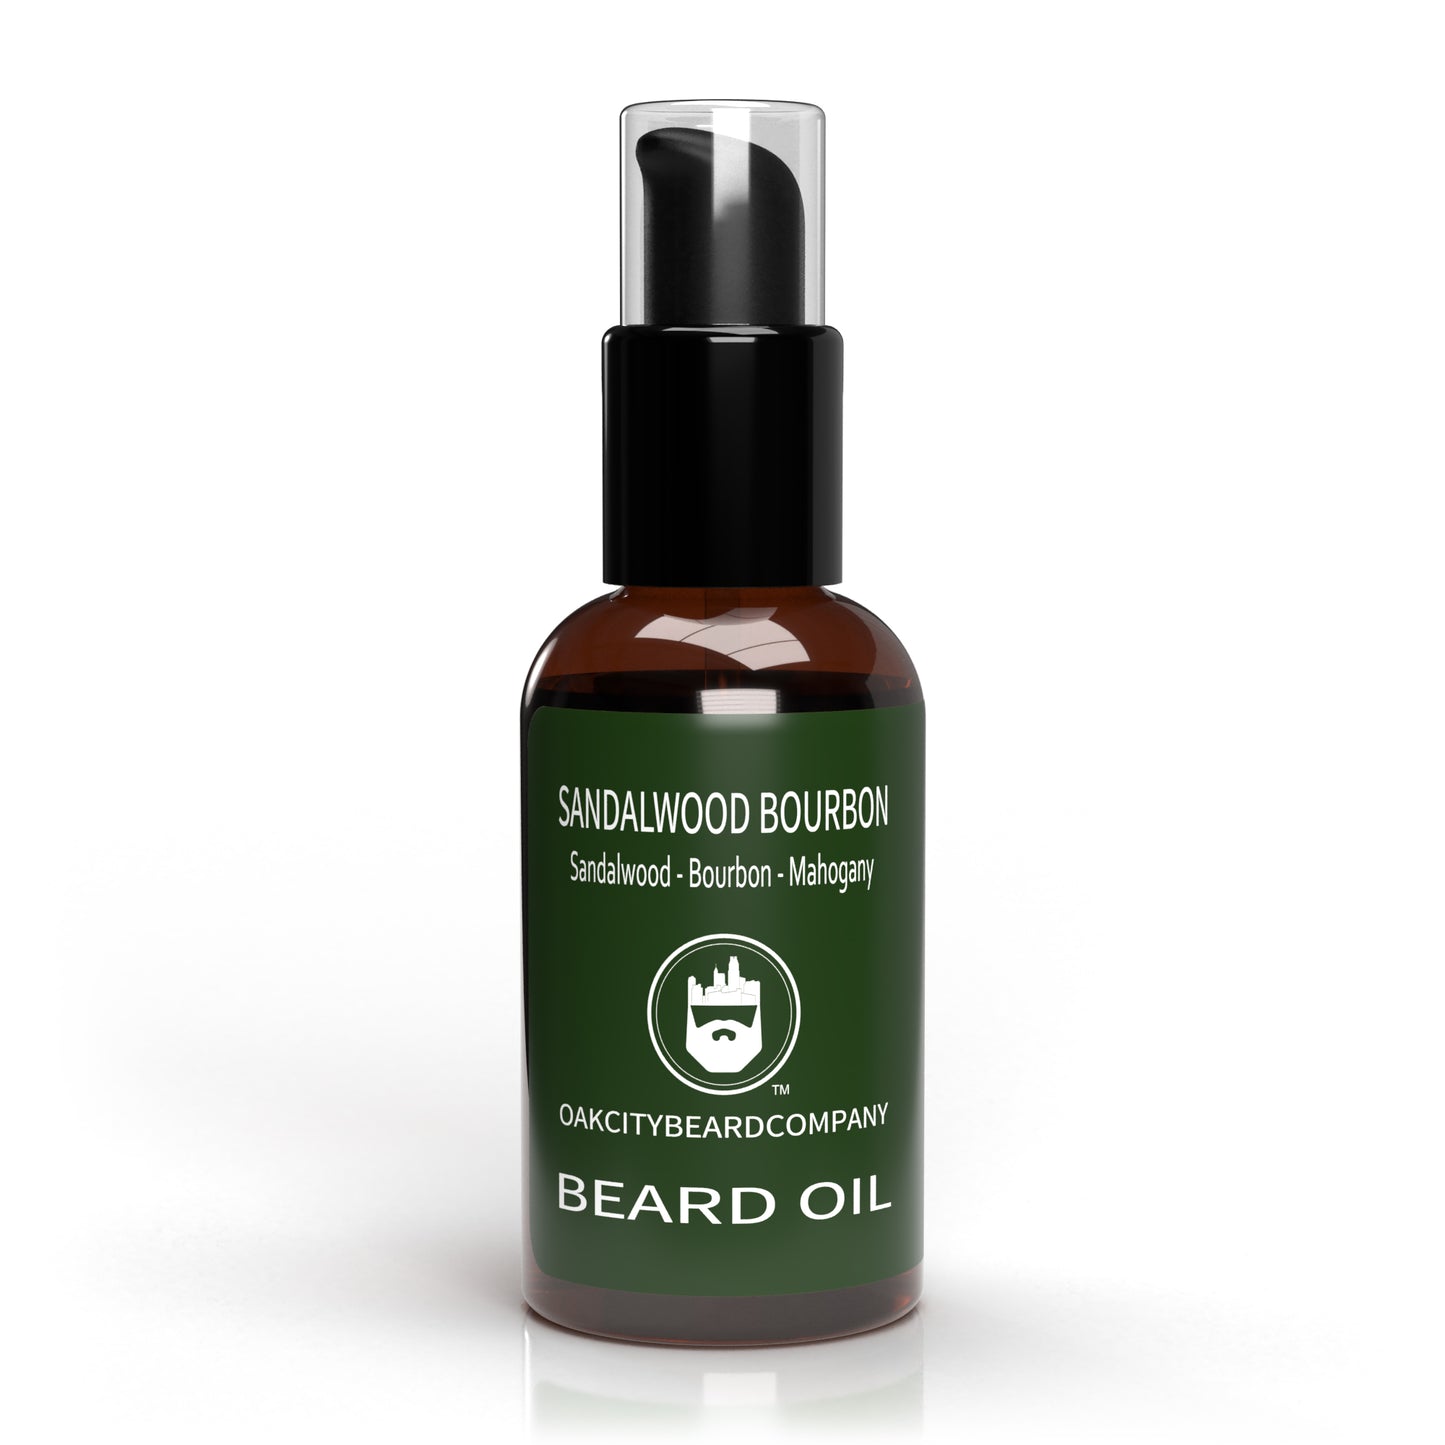 Sandalwood Bourbon (Beard Oil) by Oak City Beard Company